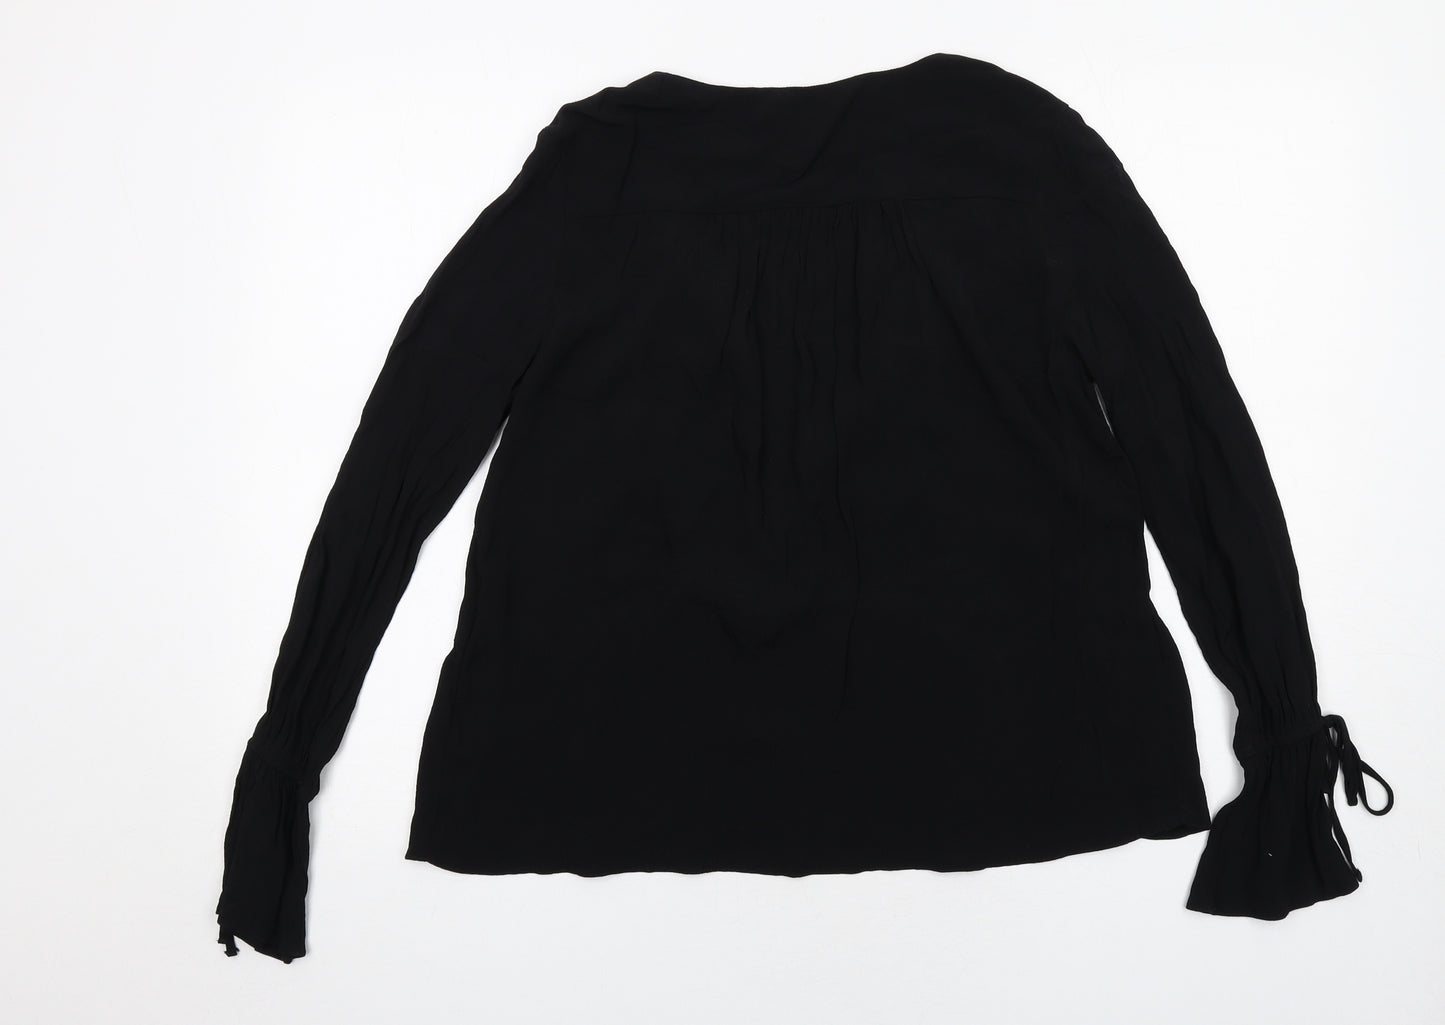 ASOS Womens Black Viscose Basic Blouse Size 6 V-Neck